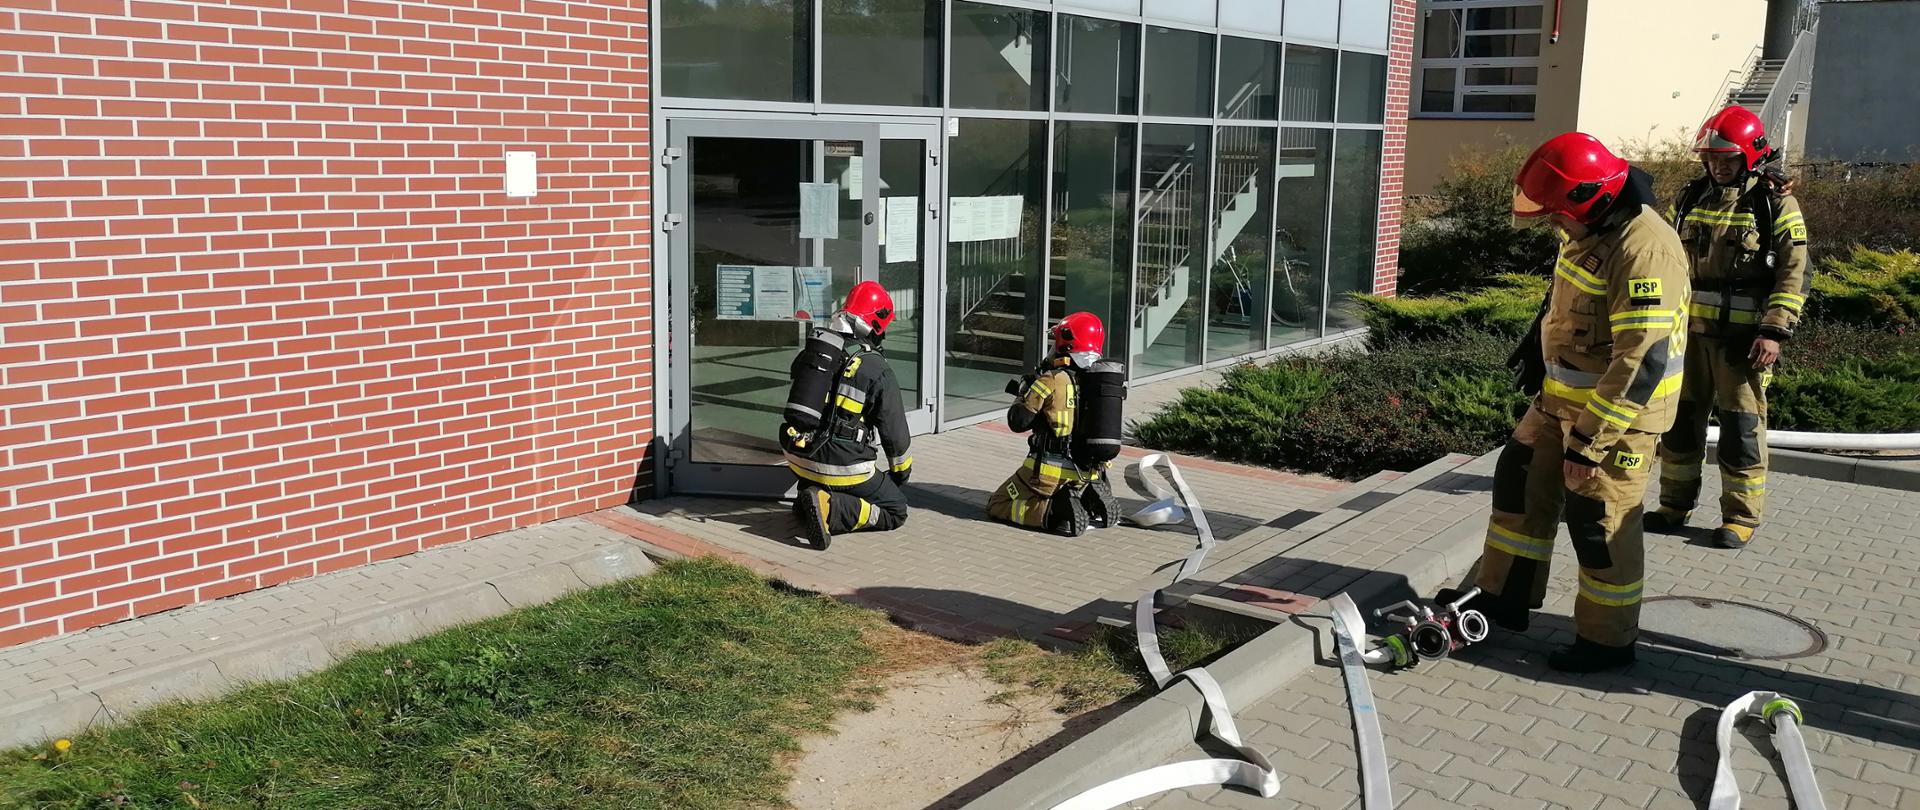 Ewakuacja - strażacy wchodzą do budynku